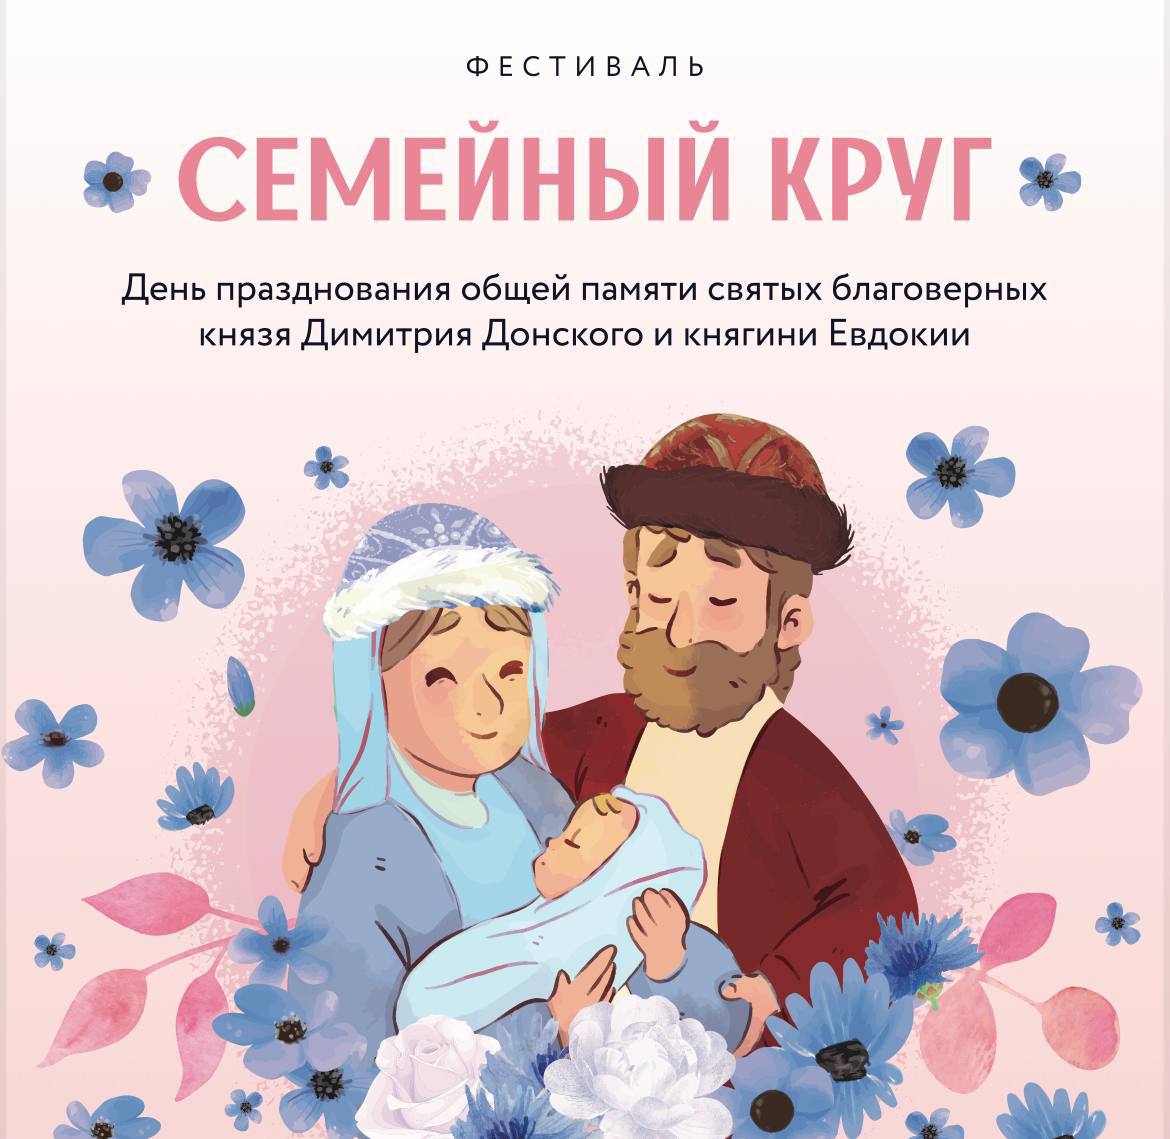 Фестиваль «Семейный круг» состоится в Нижегородском кремле в День защиты детей